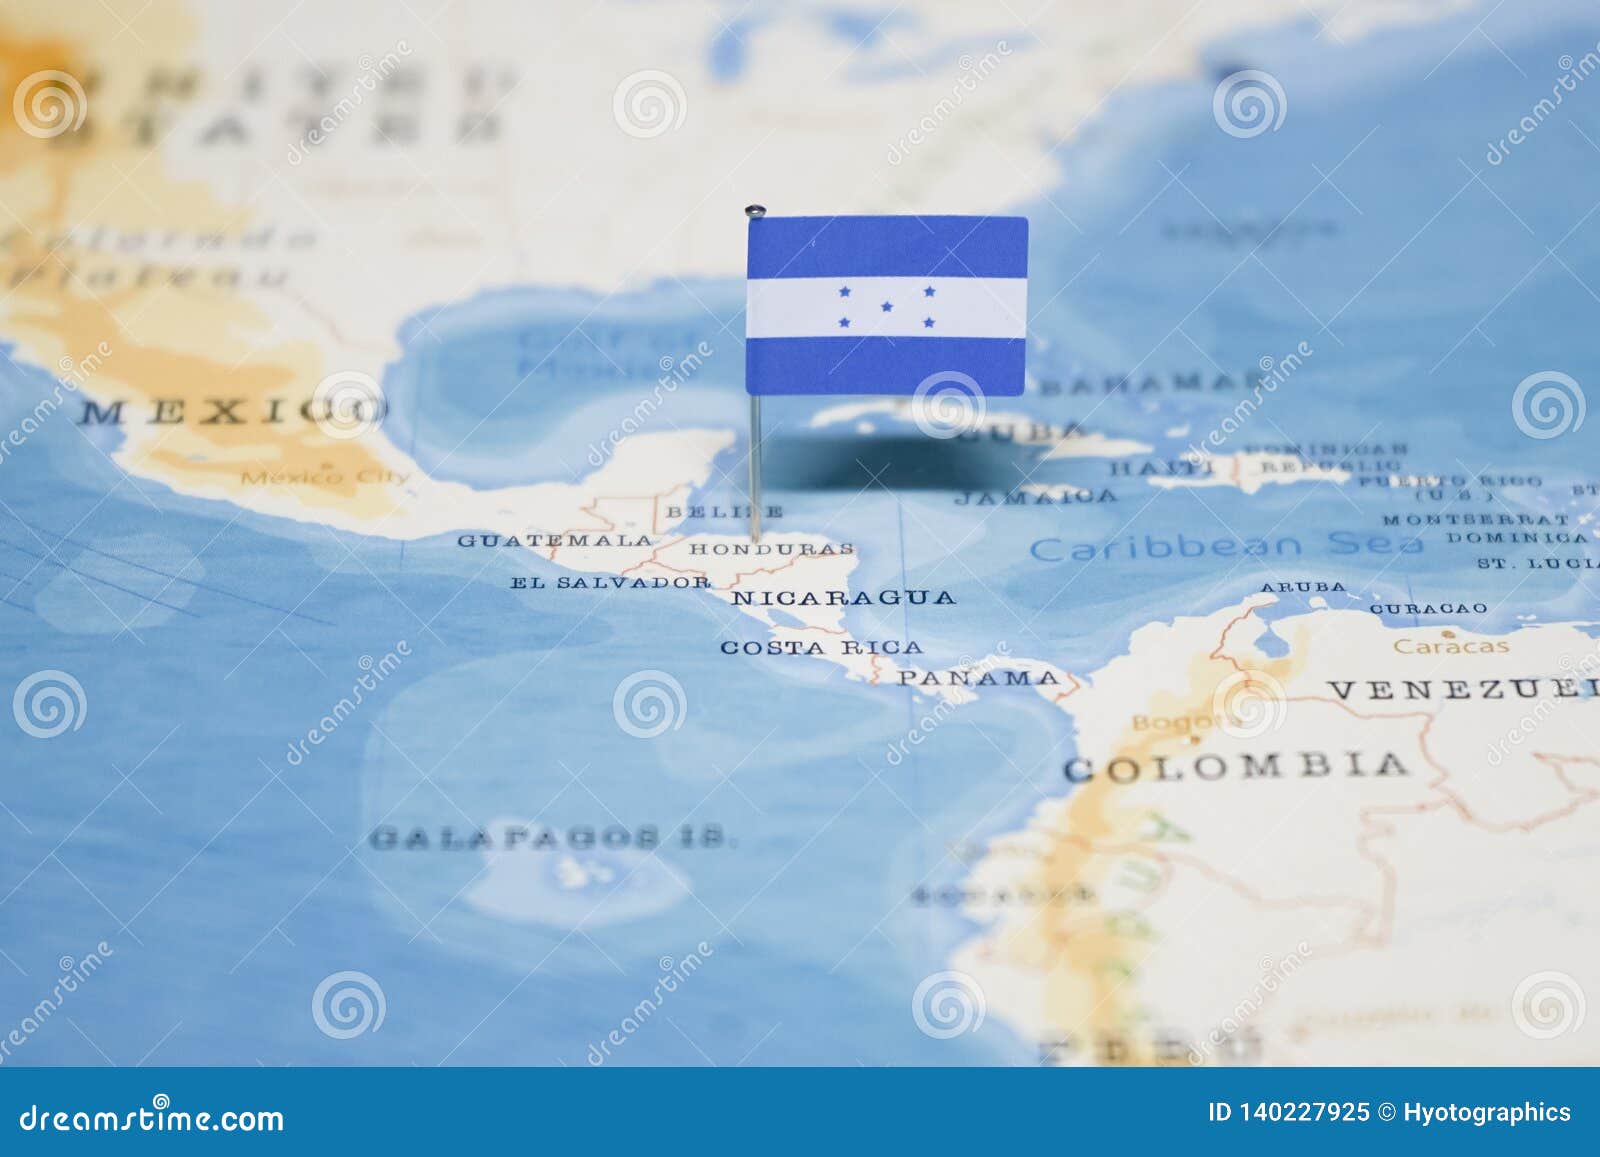 Flag Honduras World Map Flag Honduras World Map 140227925 